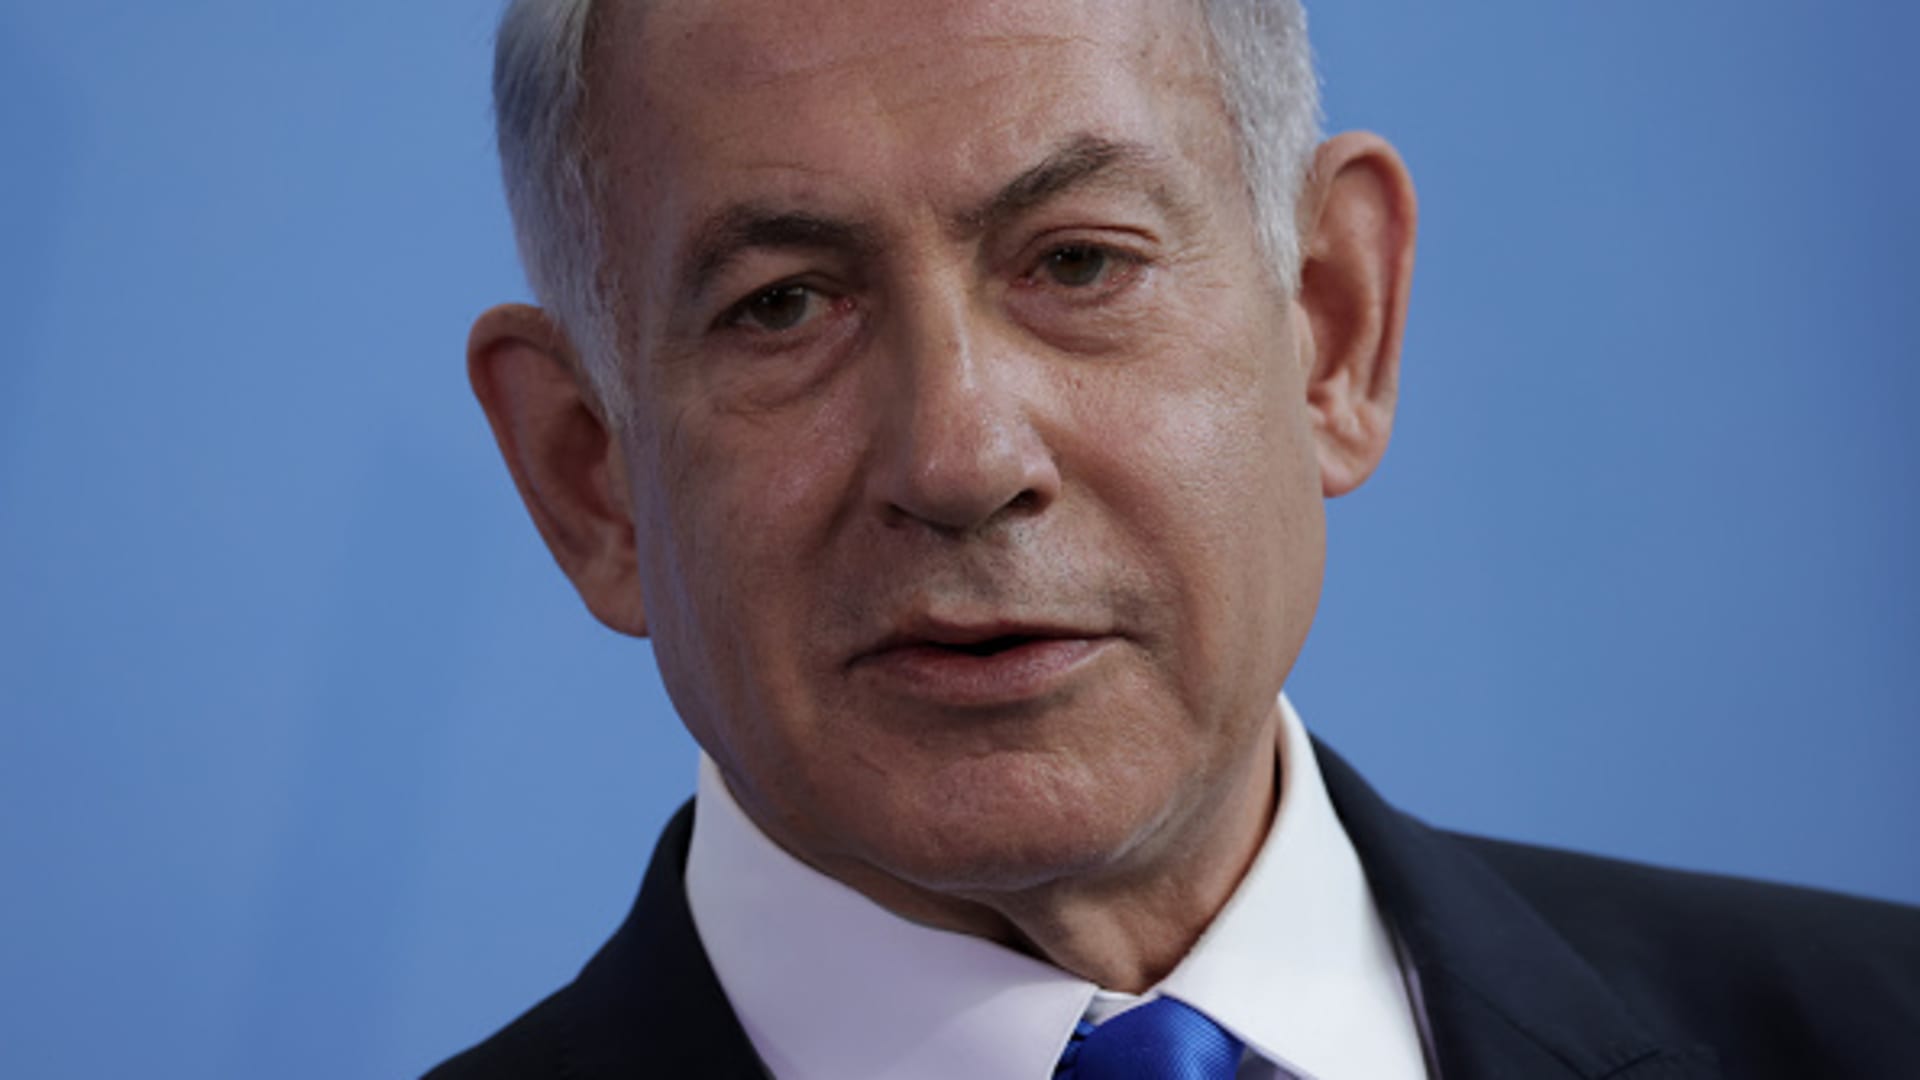 Israeli Prime Minister Benjamin speaks to the media on March 16, 2023 in Berlin, Germany.